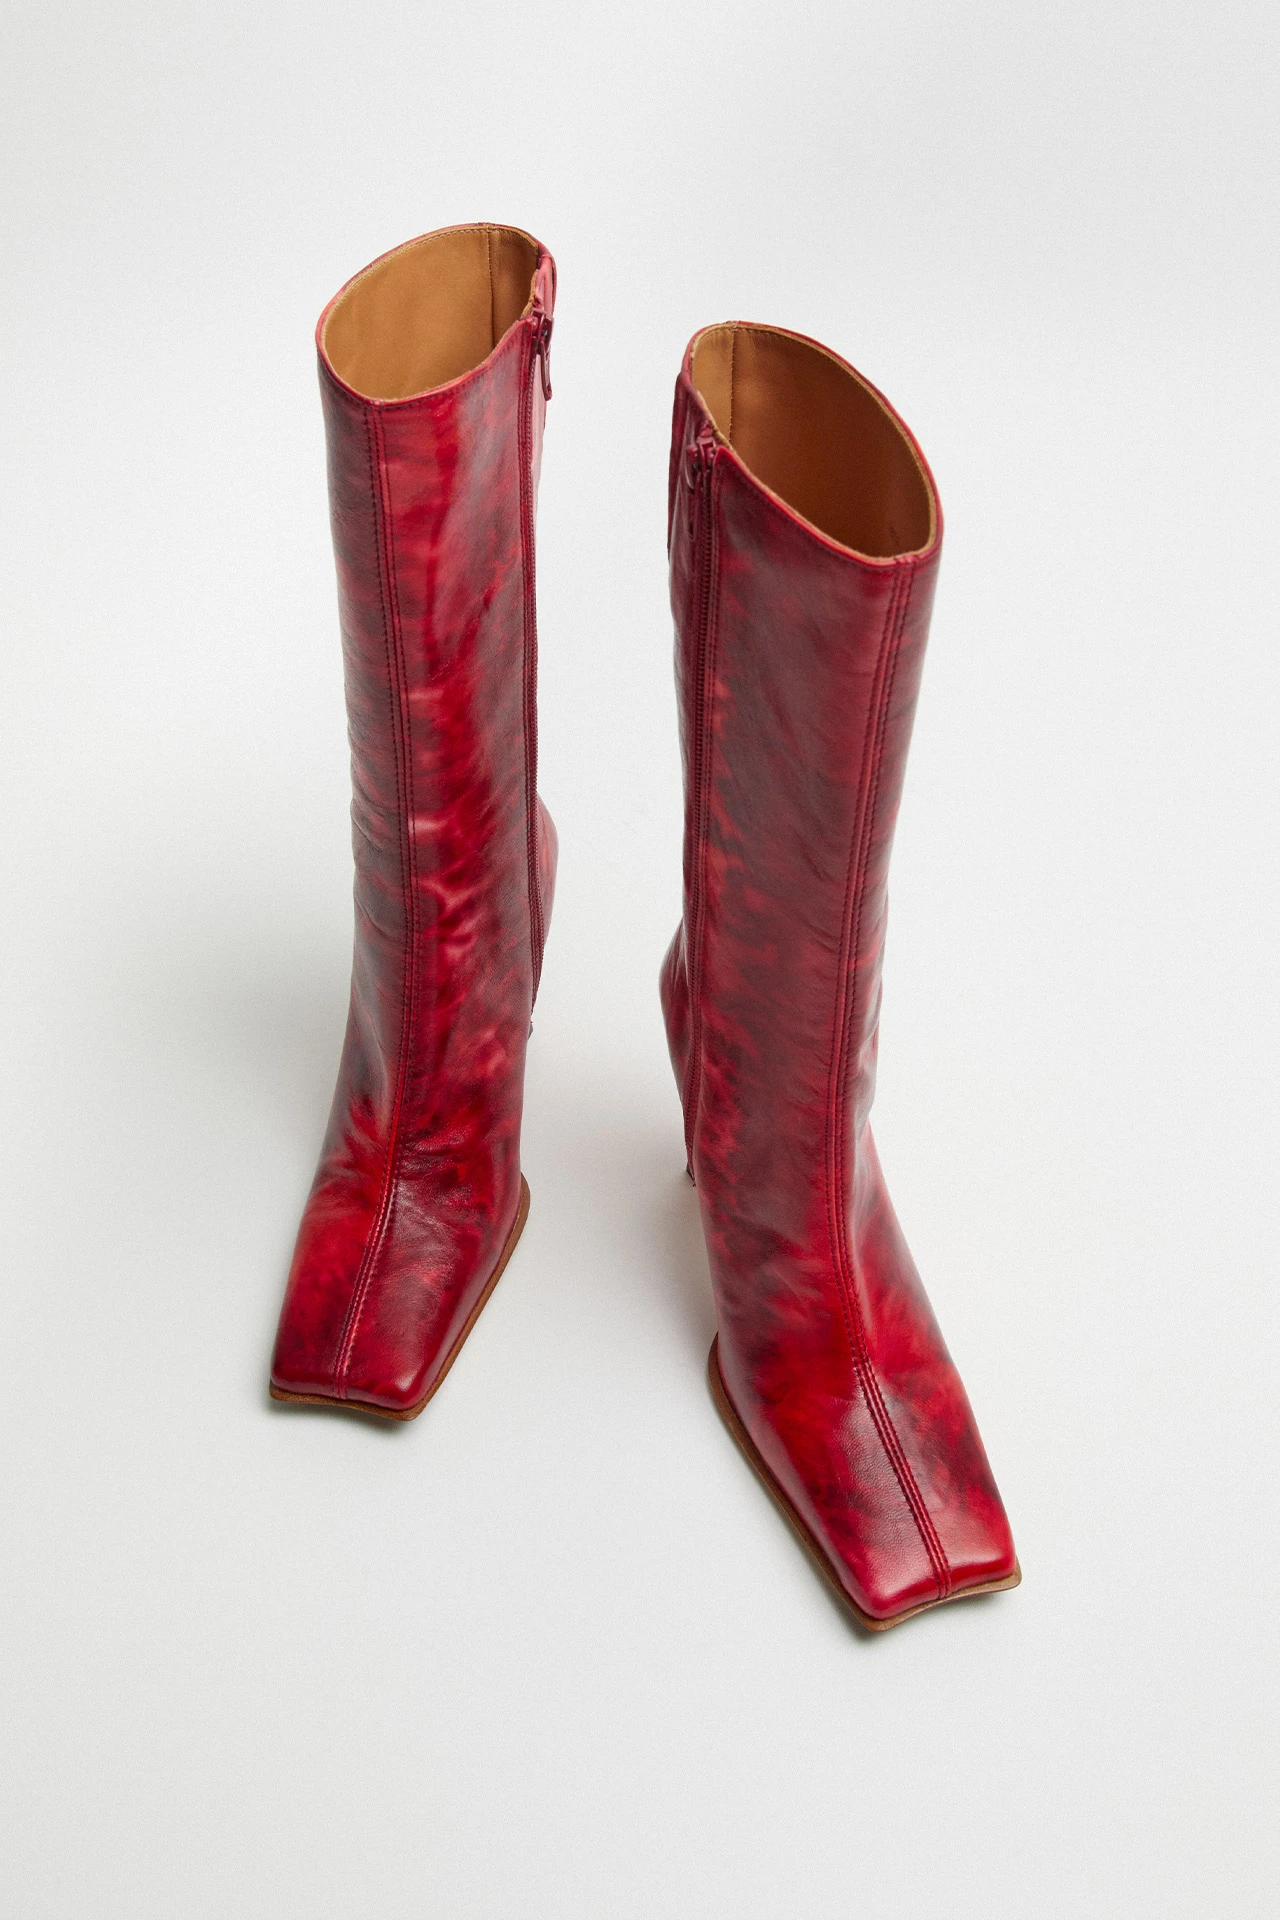 Miista-noor-red-boots-04